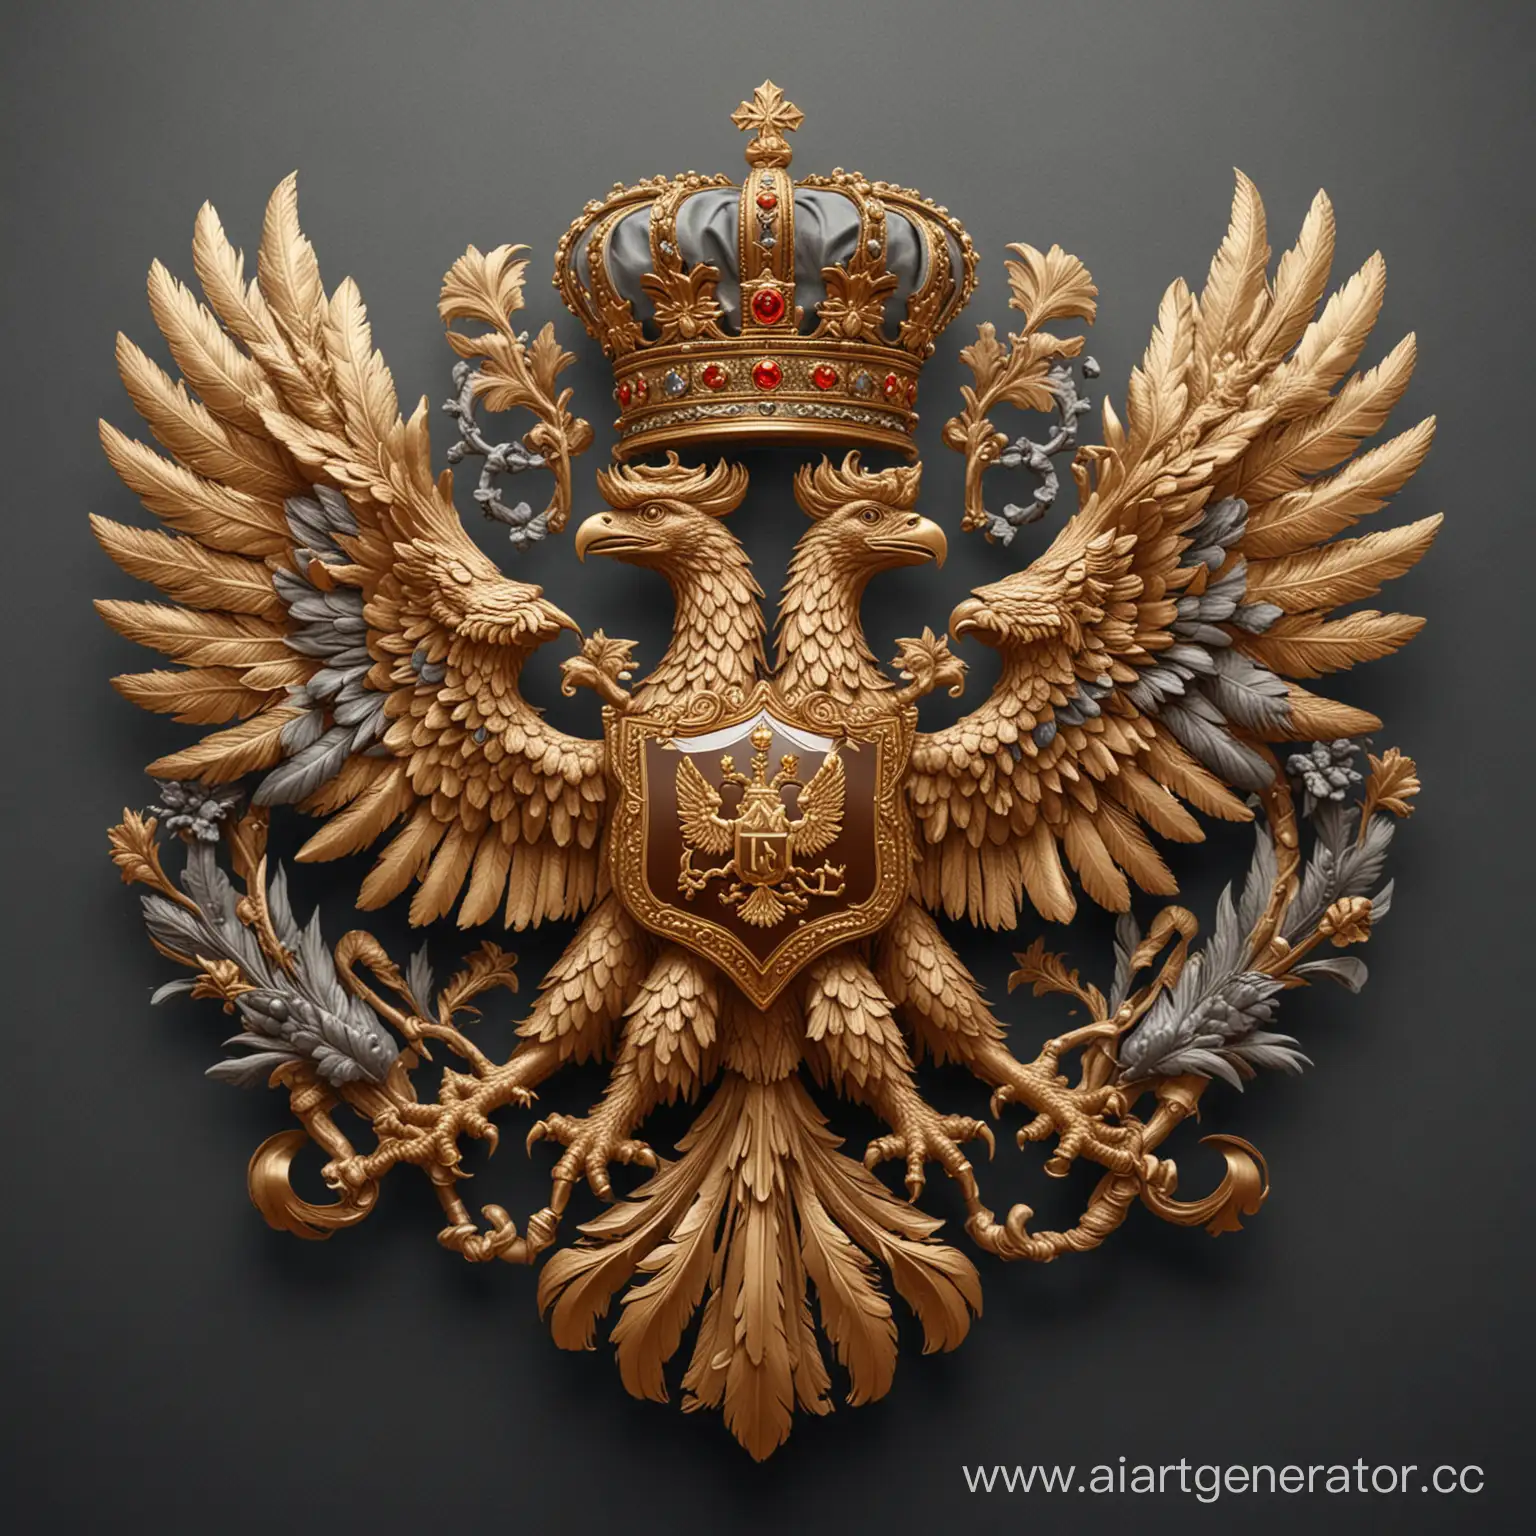 Сгенерируй изображение в стиле Российской империи для аватарки без людей, с элементами такими как двуглавый орел, императорская корона и имперские символы величия